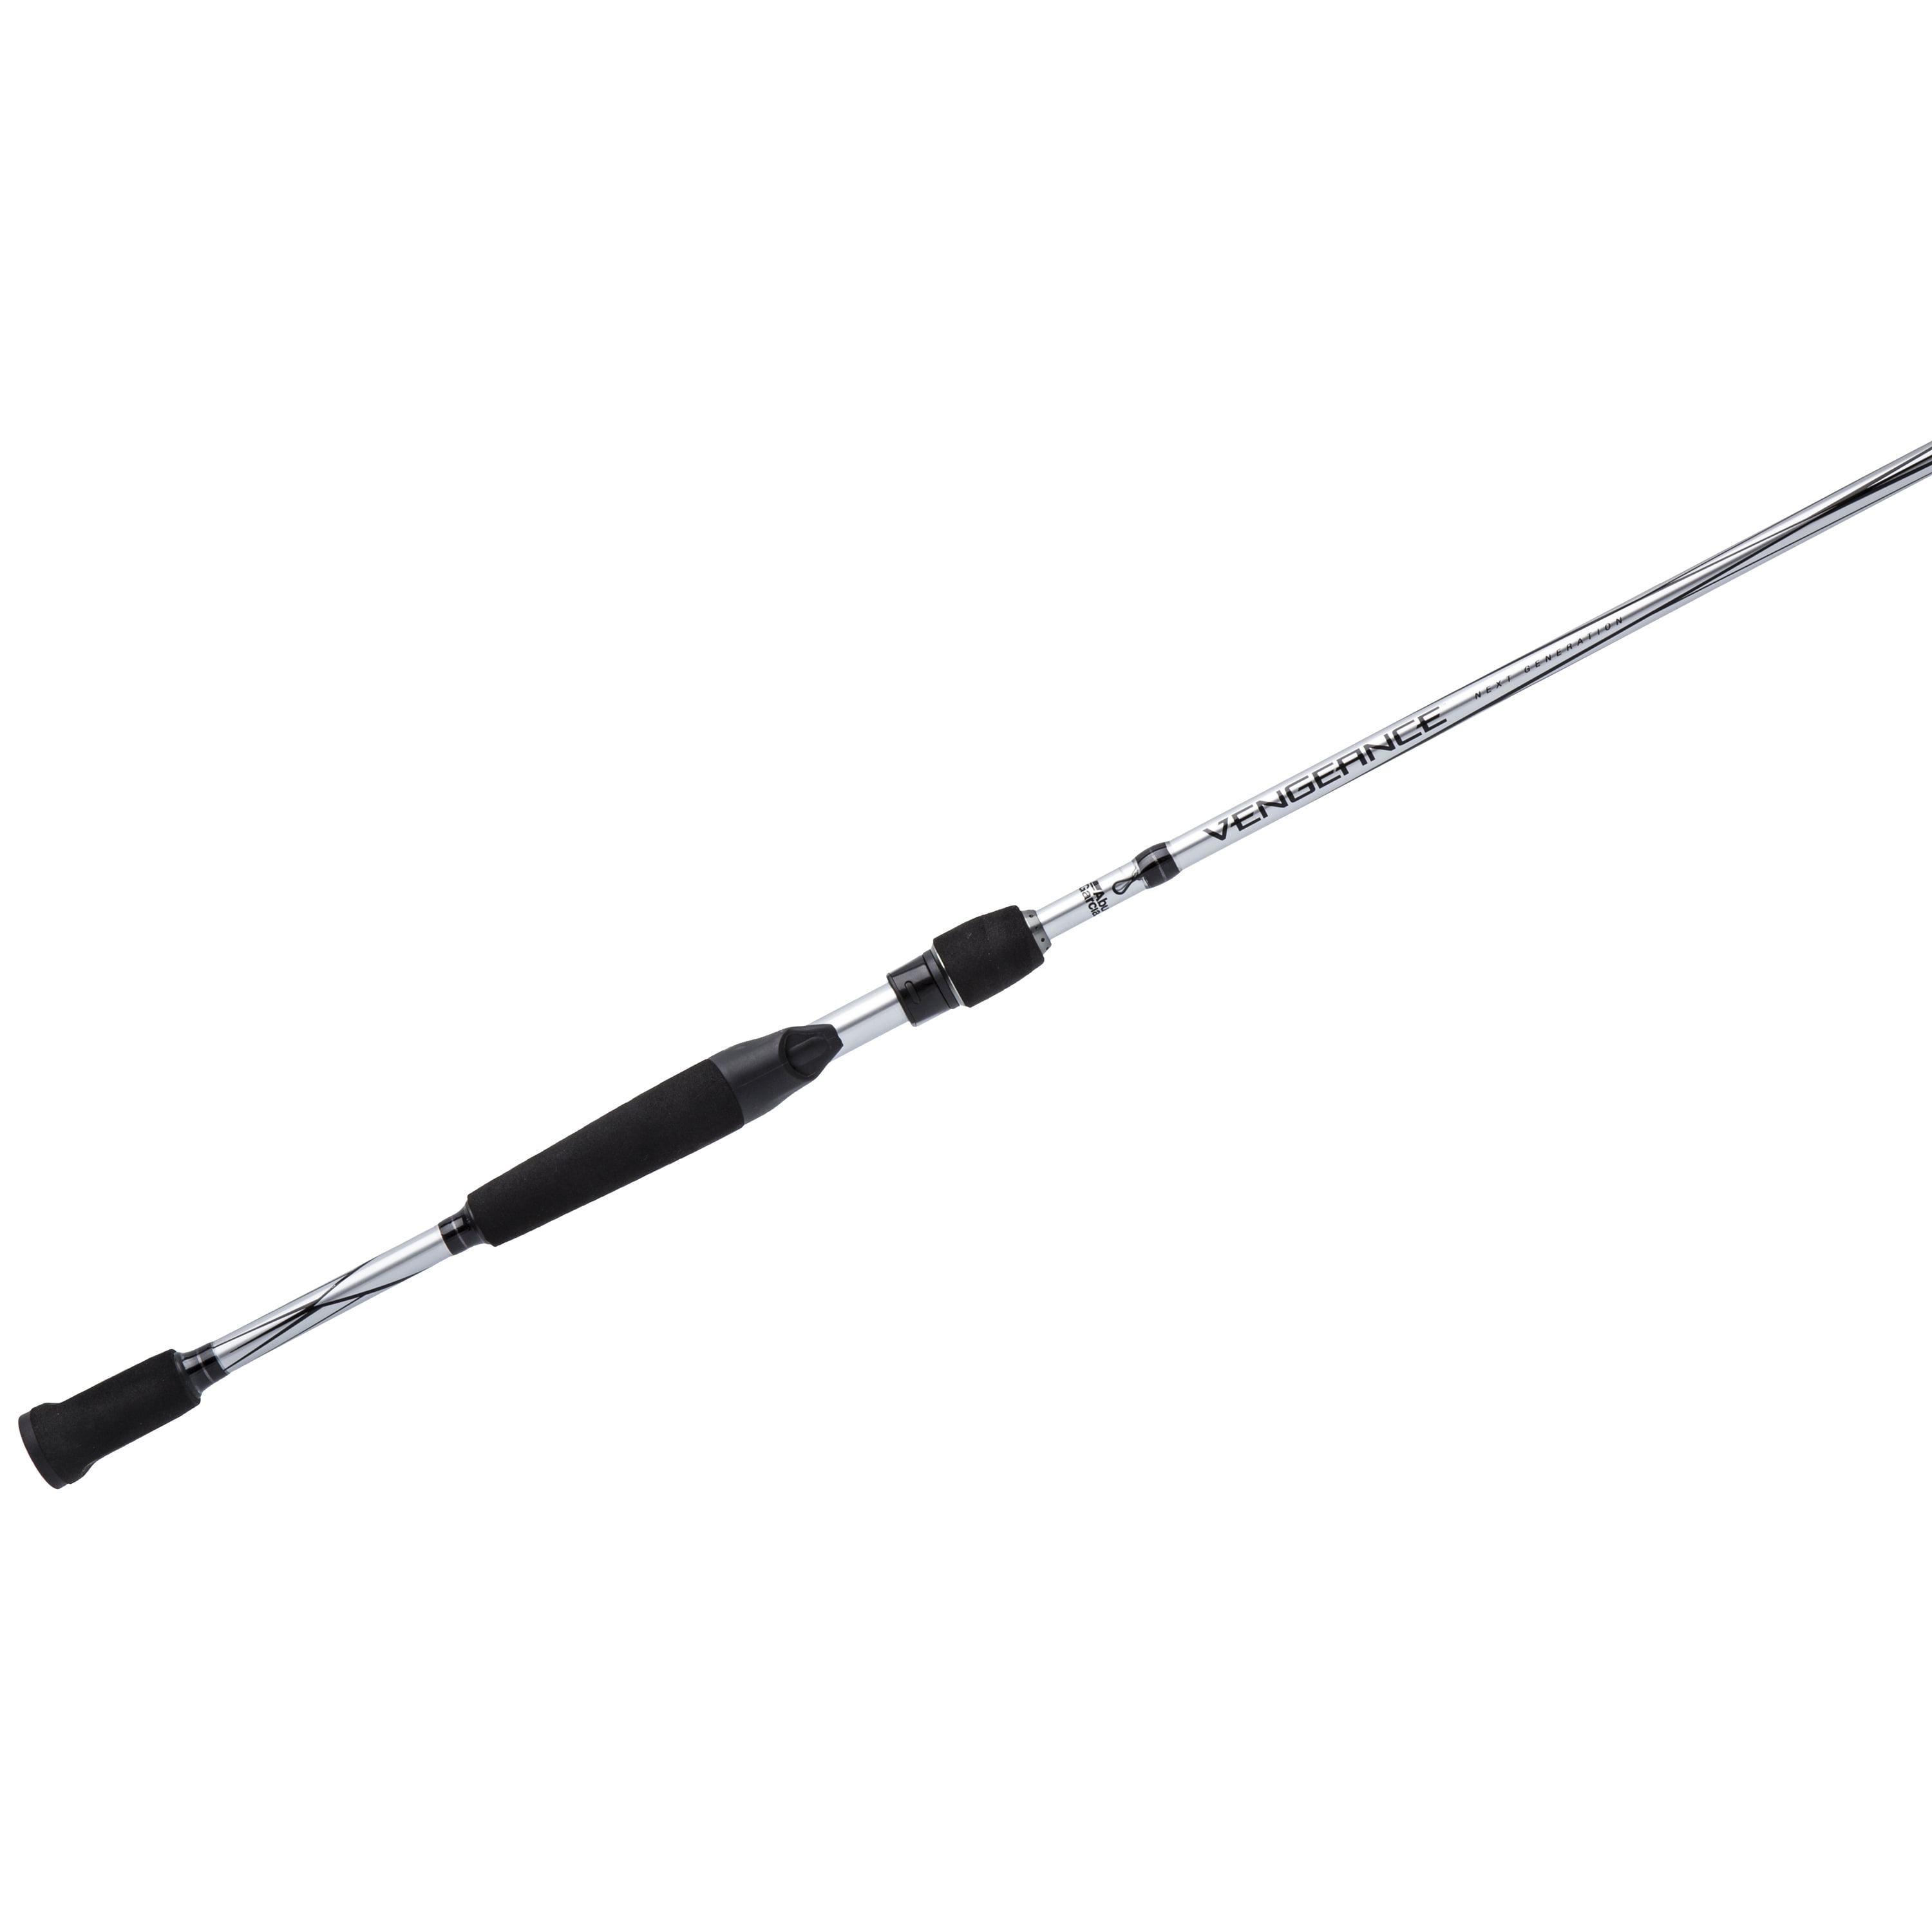 Abu Garcia Winch Casting Fishing Rod, Black, 7'2 - Medium Light - 1pc 